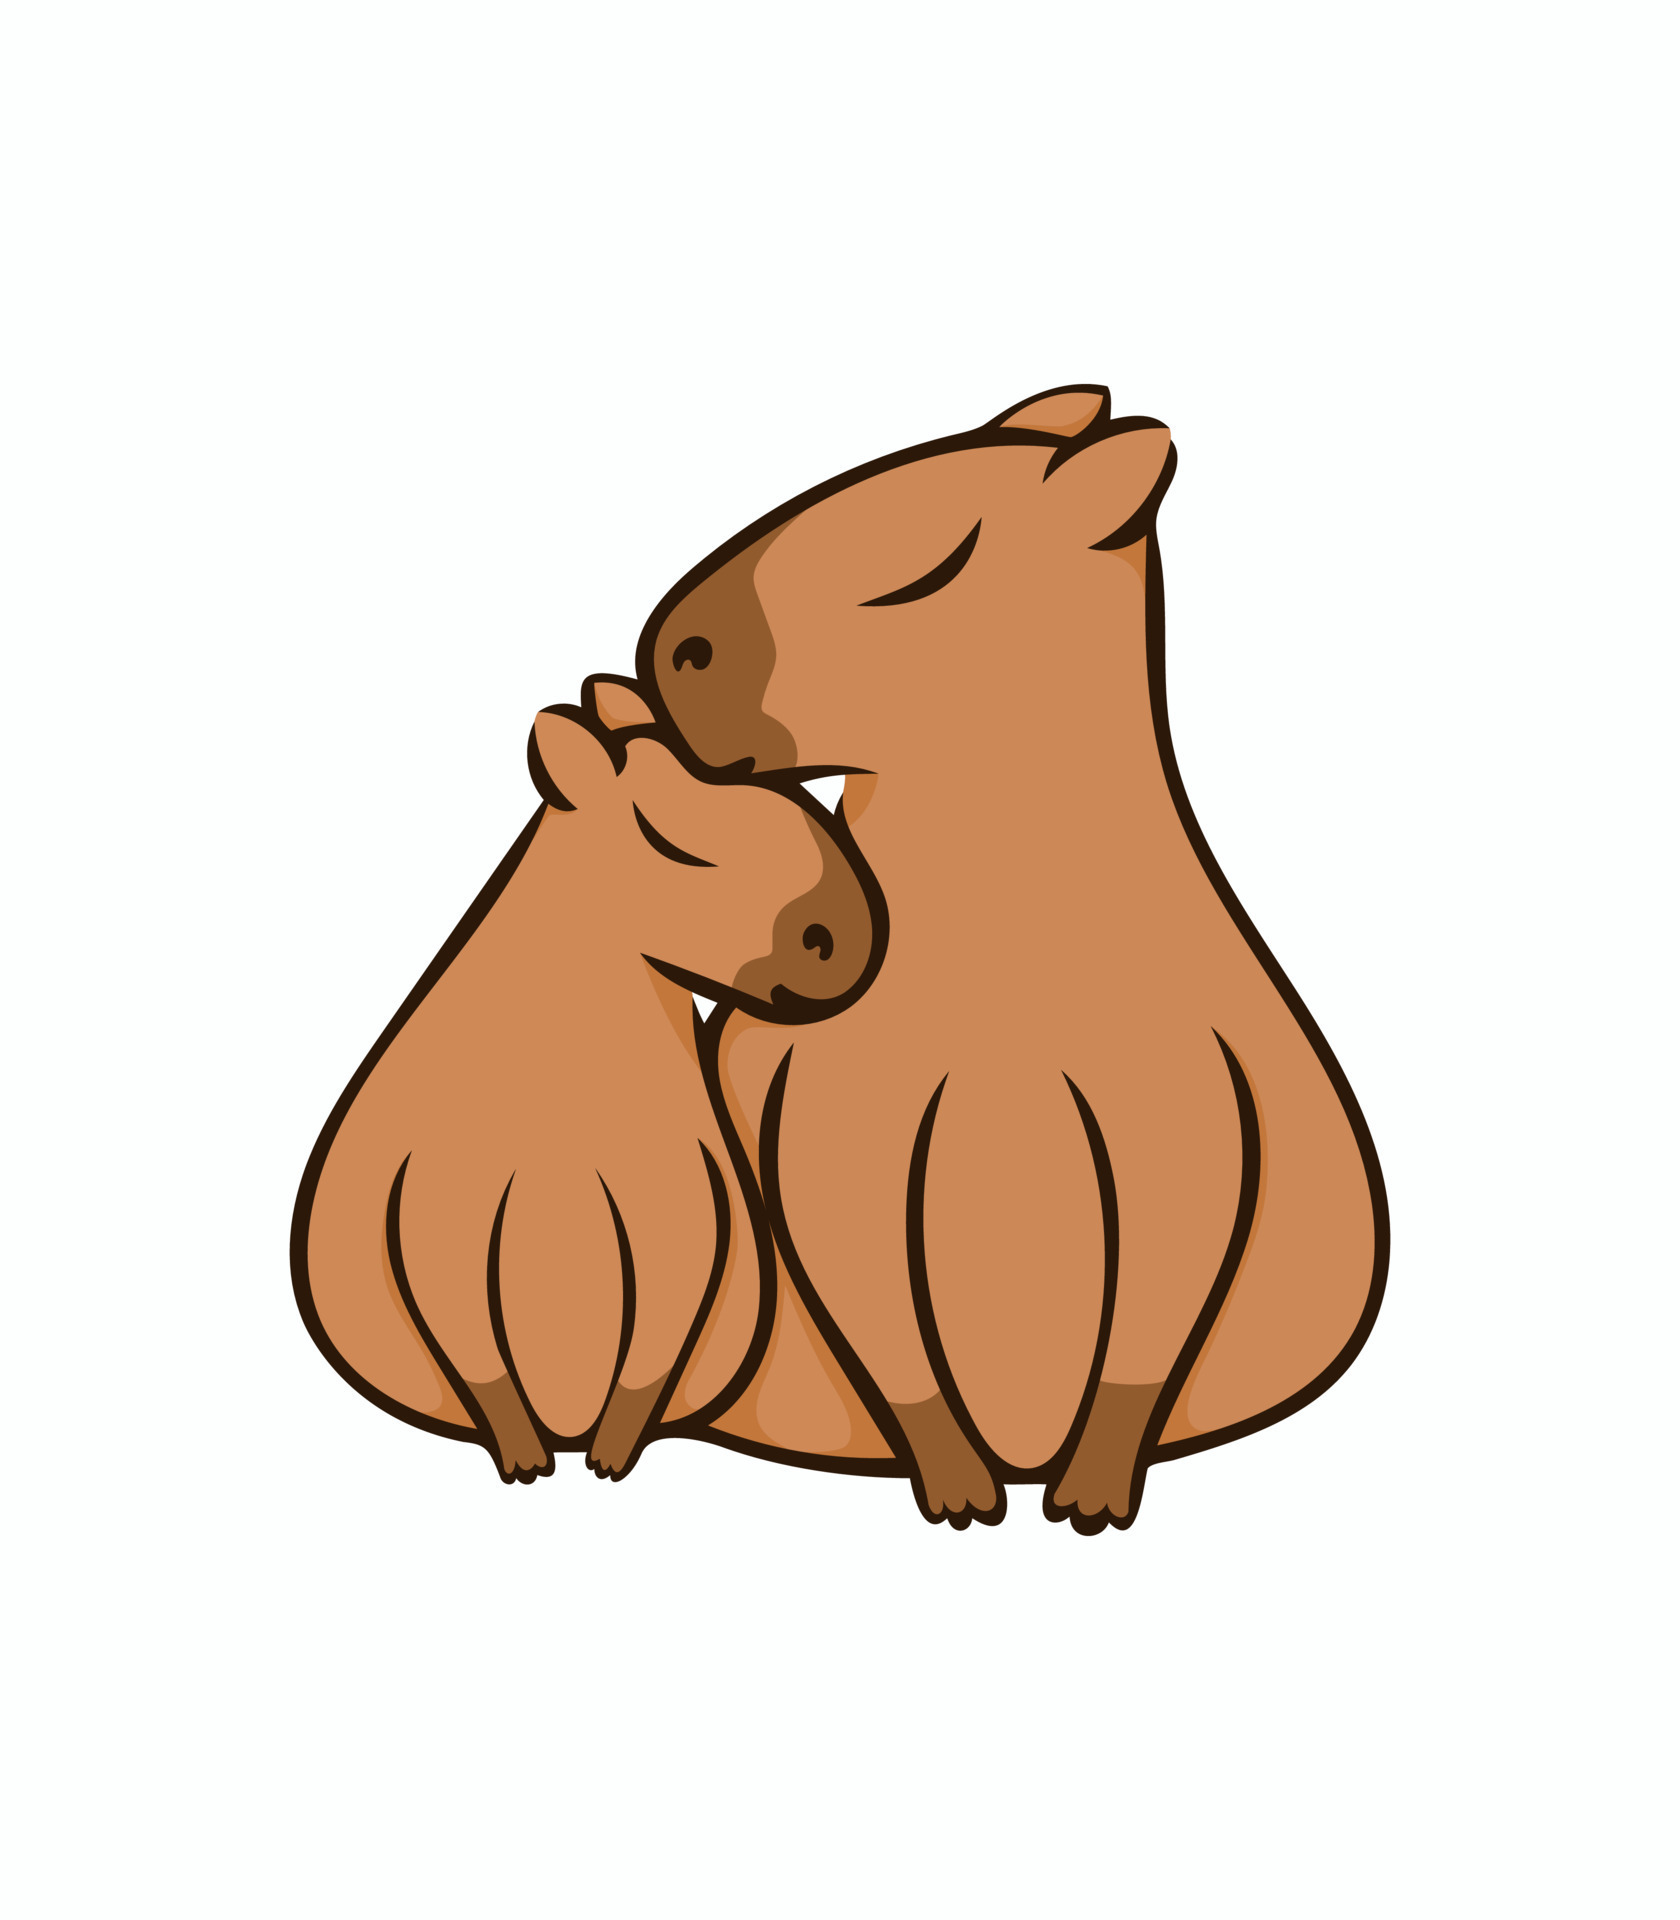 https://static.vecteezy.com/ti/gratis-vektor/p3/23206234-bezaubernd-paar-von-wasserschweine-illustration-capybara-bild-isoliert-auf-weiss-hintergrund-einfach-design-element-zum-dekoration-vektor.jpg